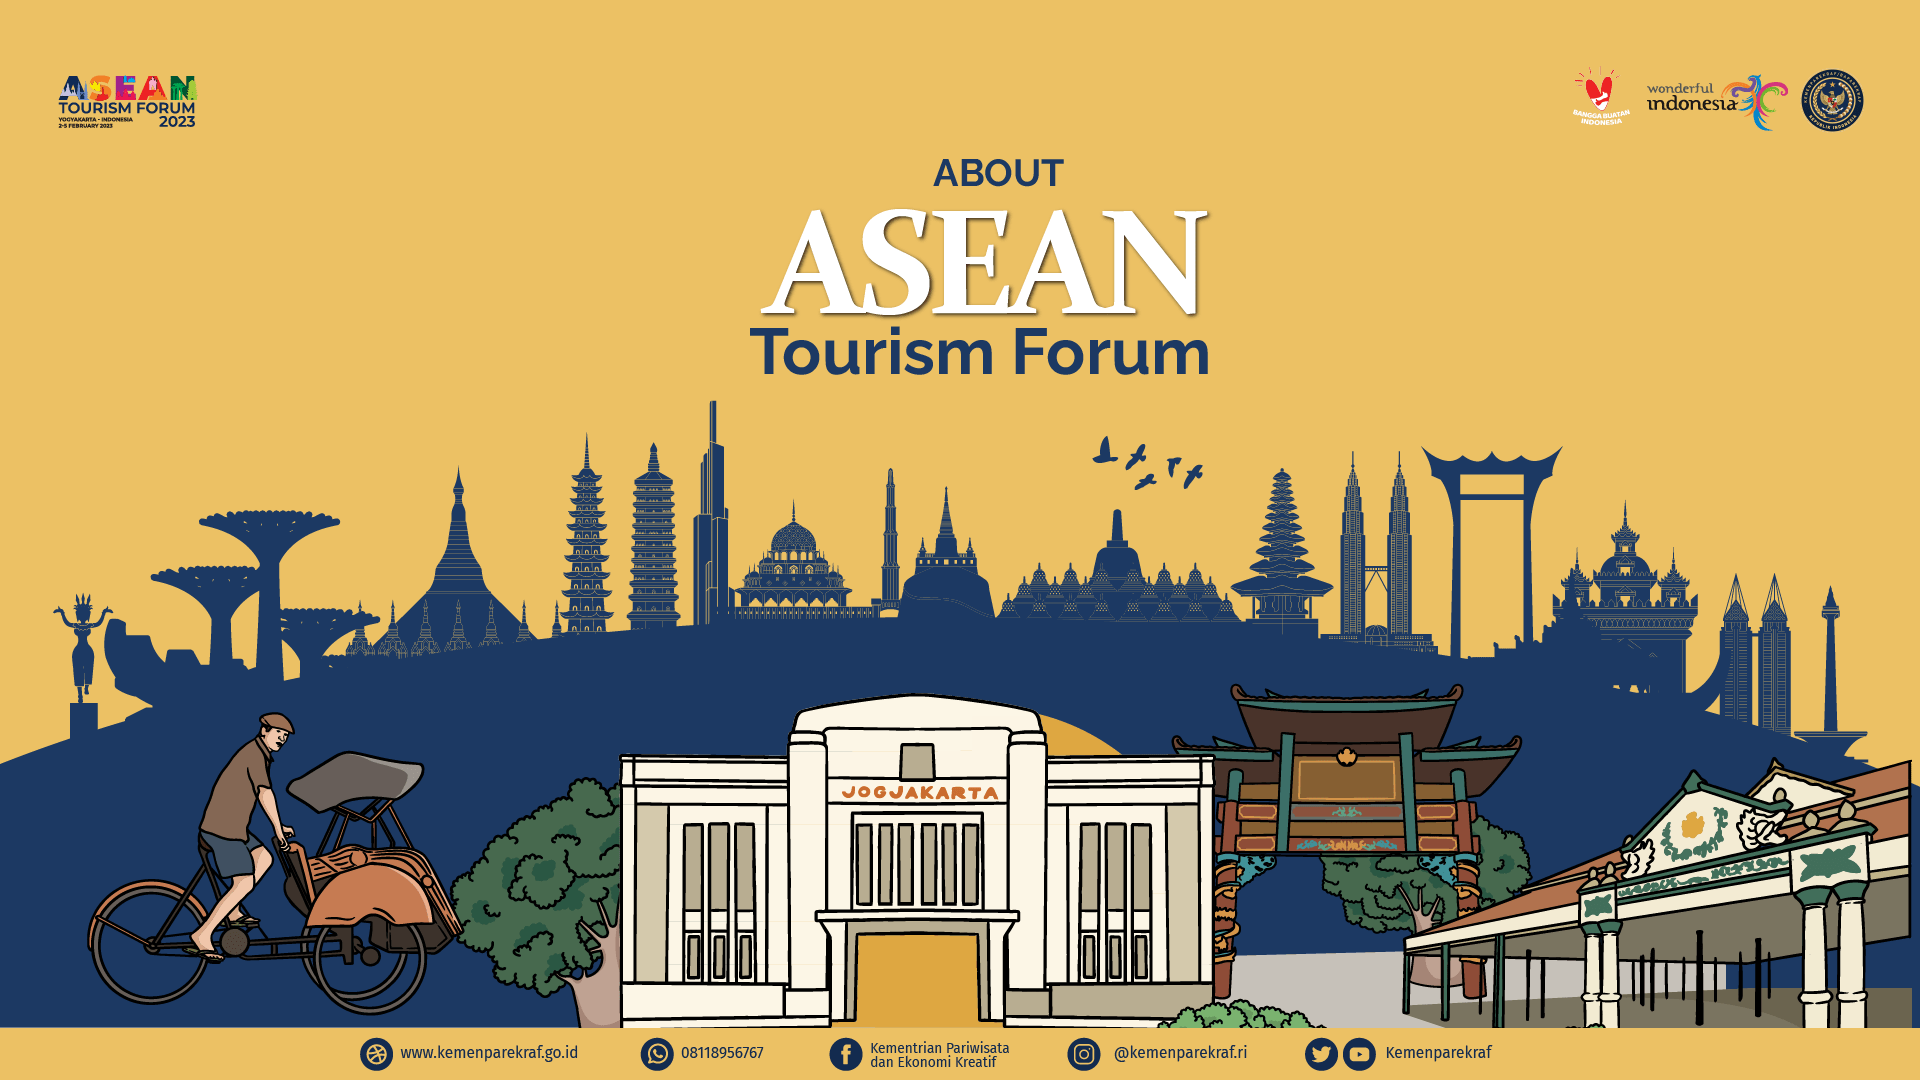 asean tourism forum 2023 theme